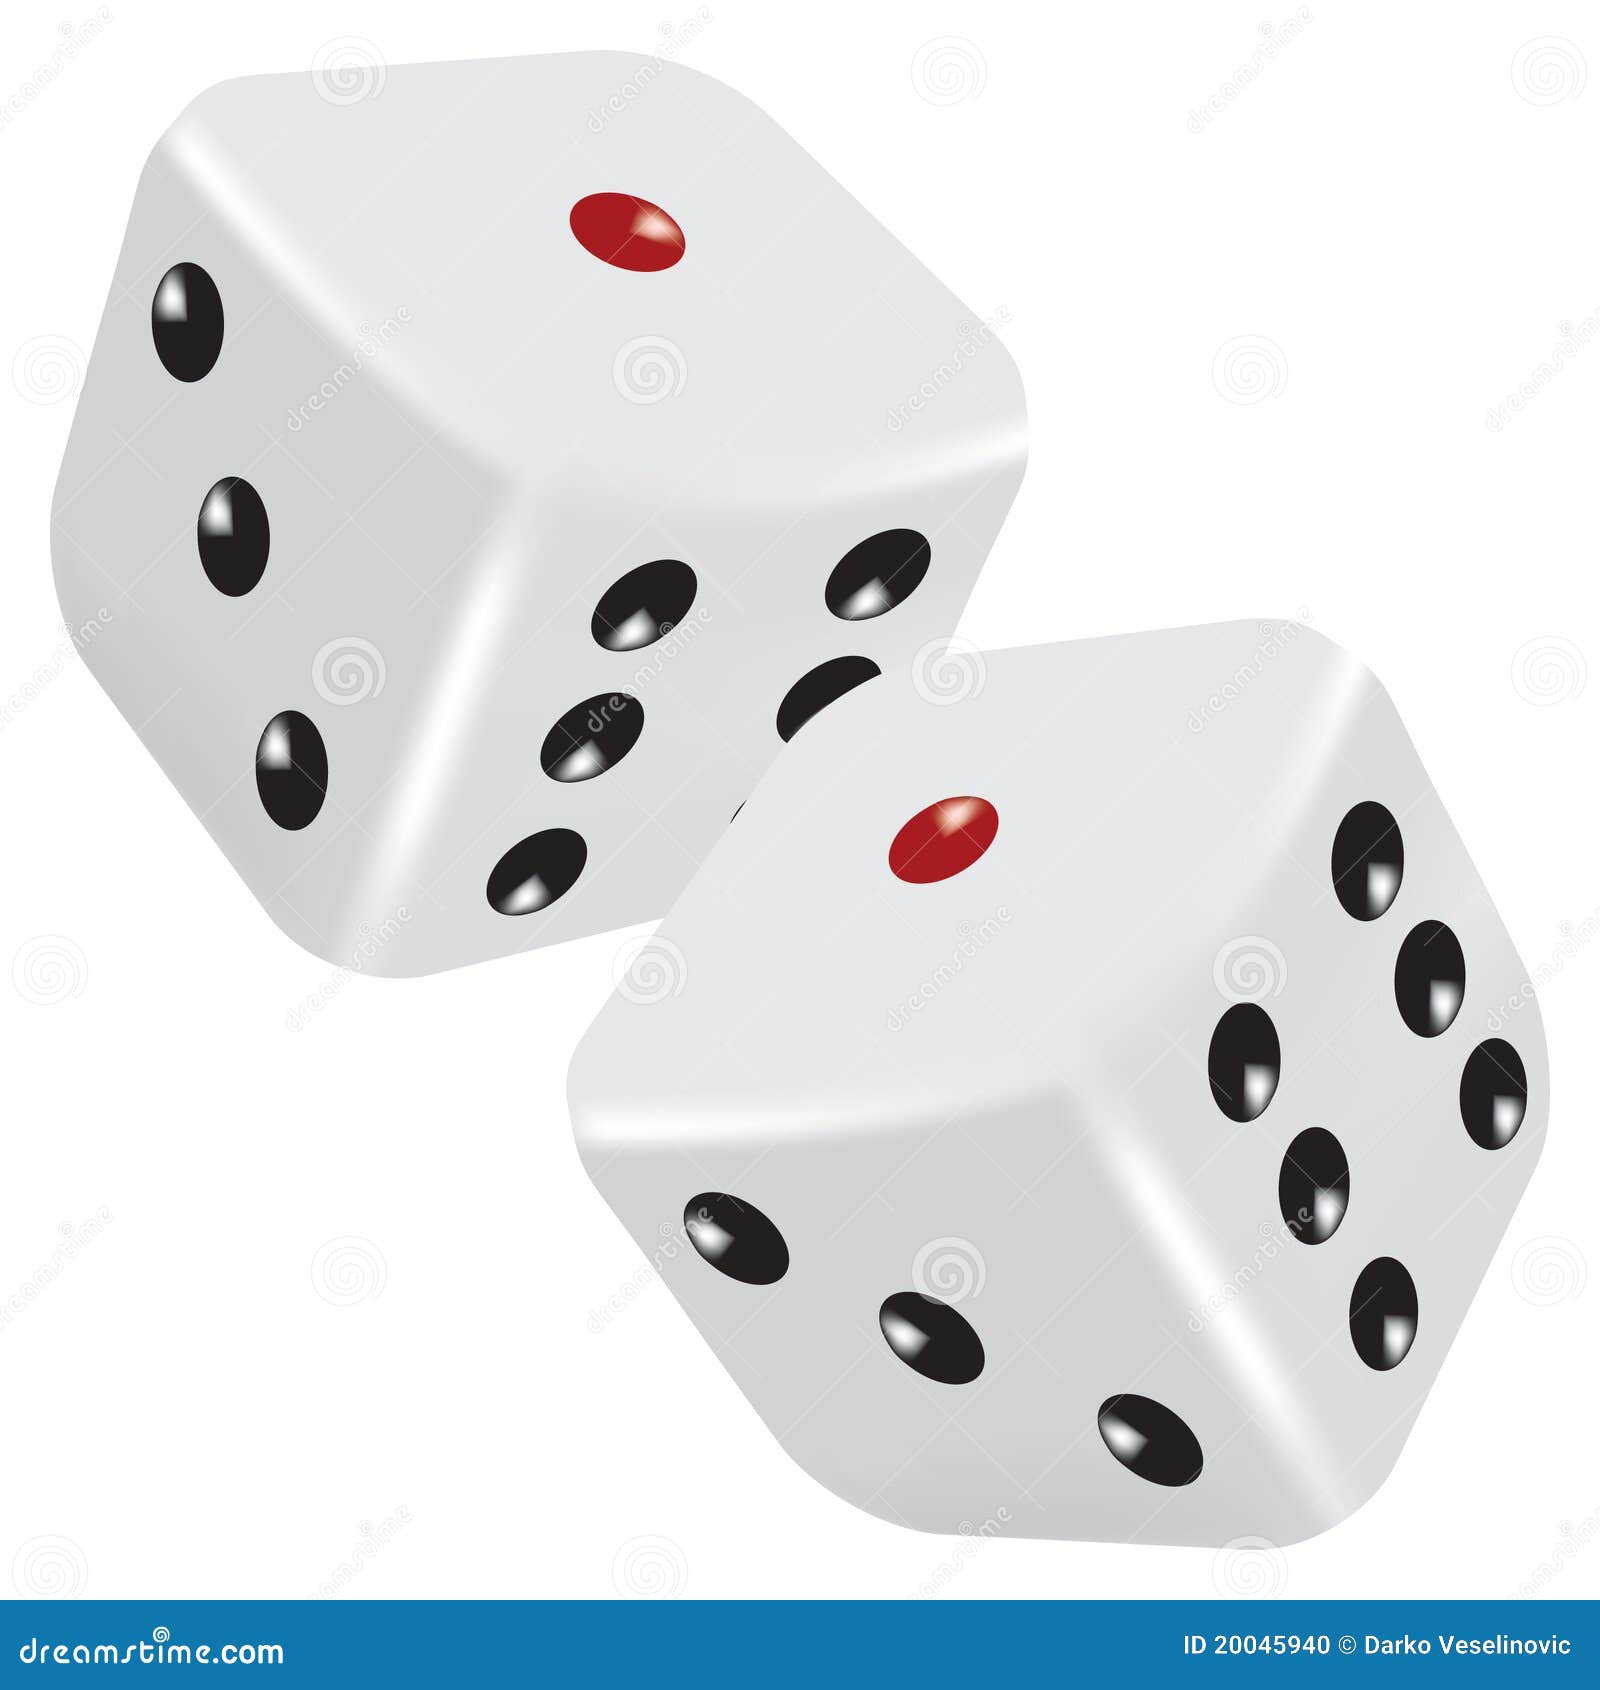 六个骰子摇出至少一个六的概率是多少?